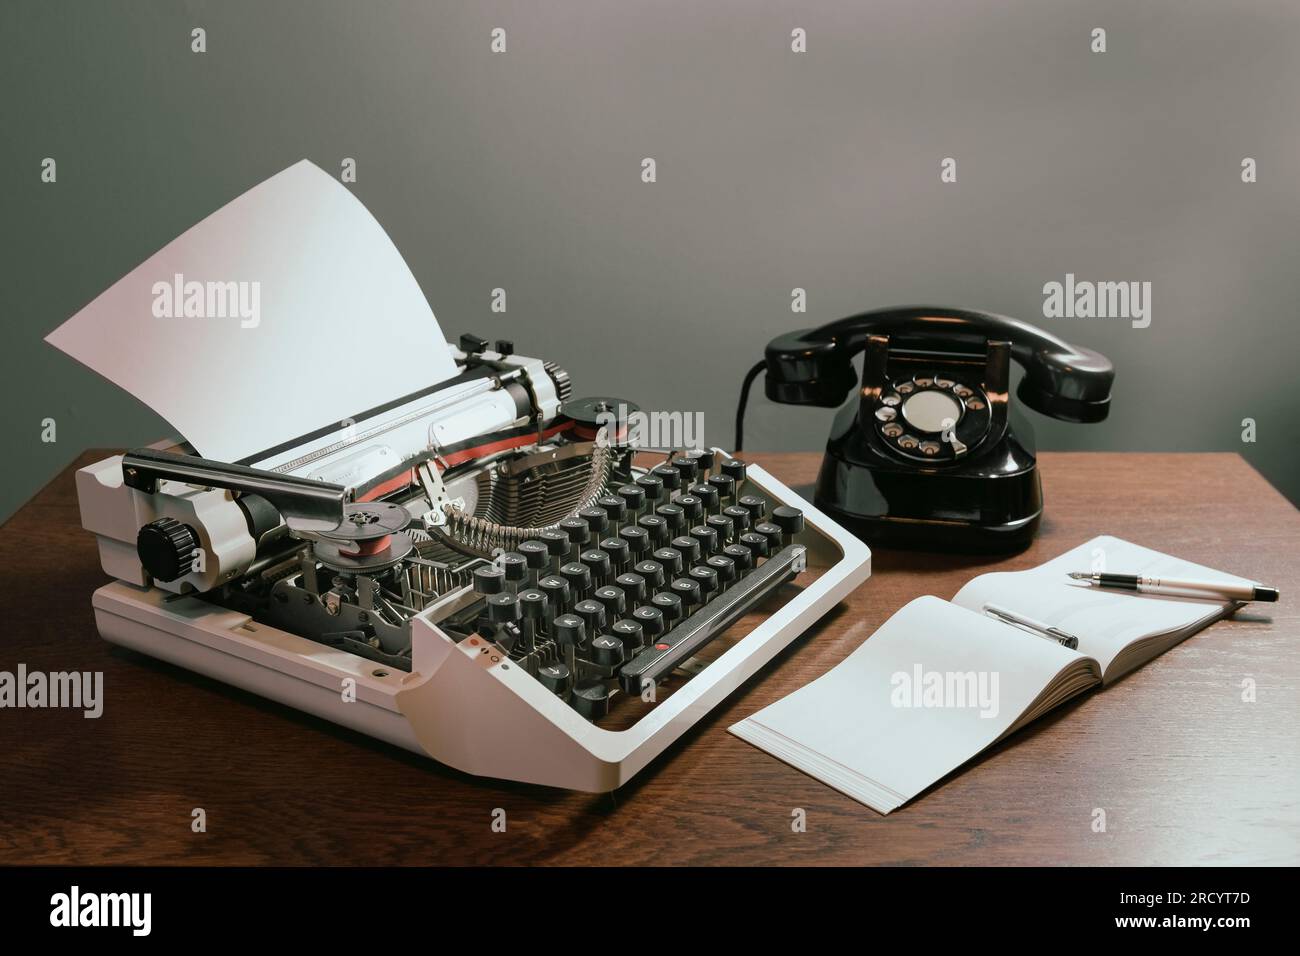 Chéquier avec une page vierge. Concept rétro avec ancien téléphone, stylo à encre et machine à écrire. en couleur Banque D'Images